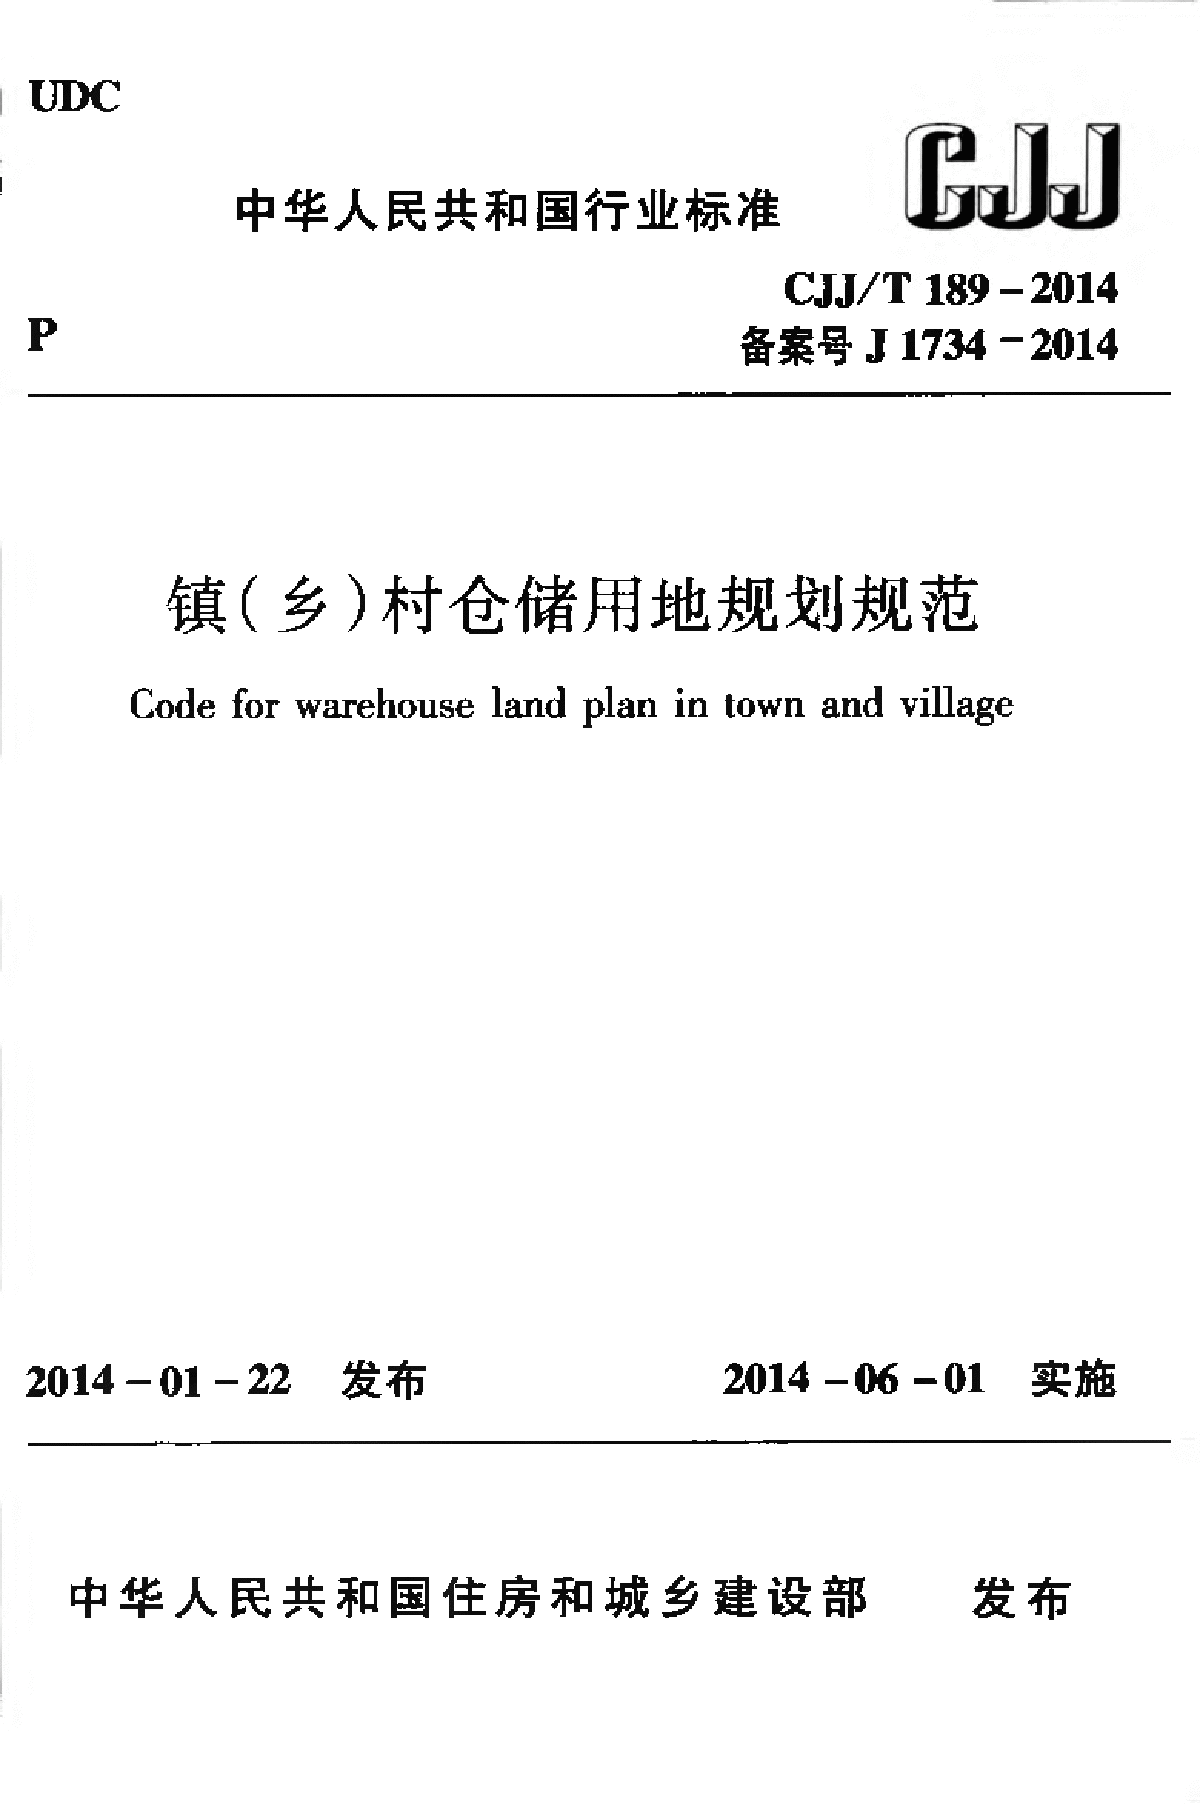 CJJT 189-2014 镇（乡）村仓储用地规划规范